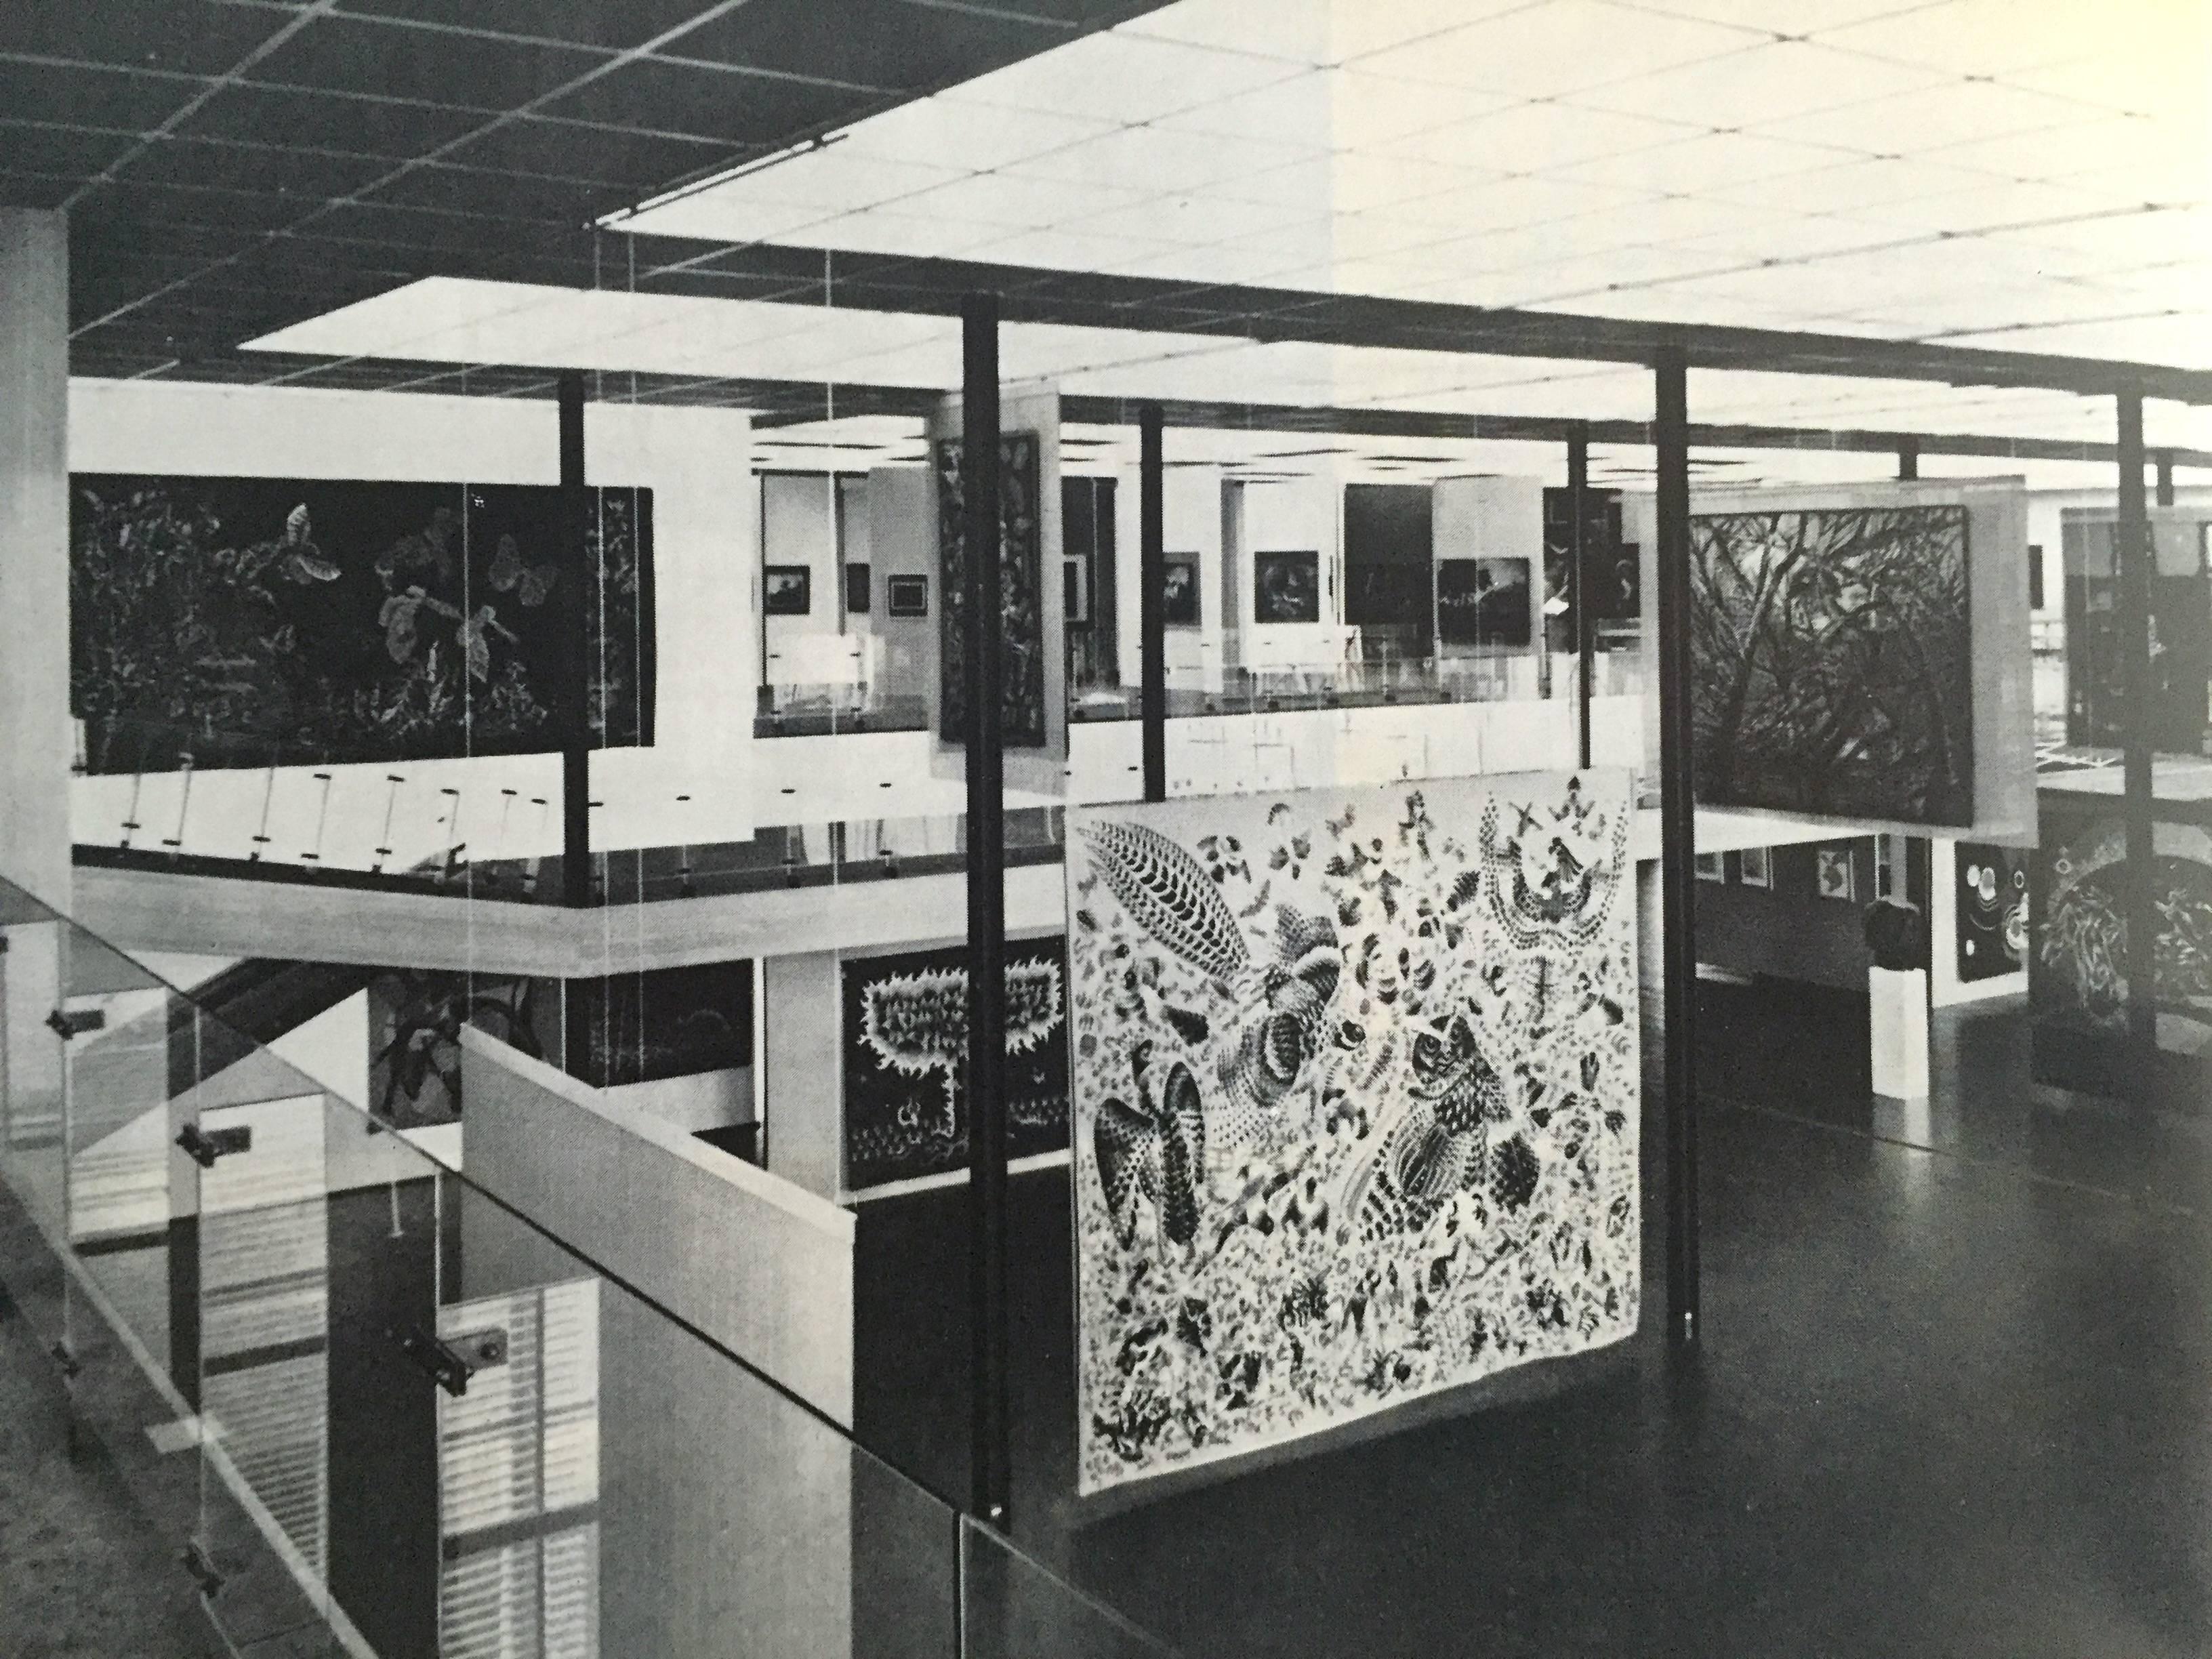 Première édition, publiée par Praeger, New York en 1965.

Une étude mondiale de la conception et de l'architecture des musées ; Brawne propose 50 exemples de conceptions de musées phares, du Guggenheim de New York au Musée national d'art de Le